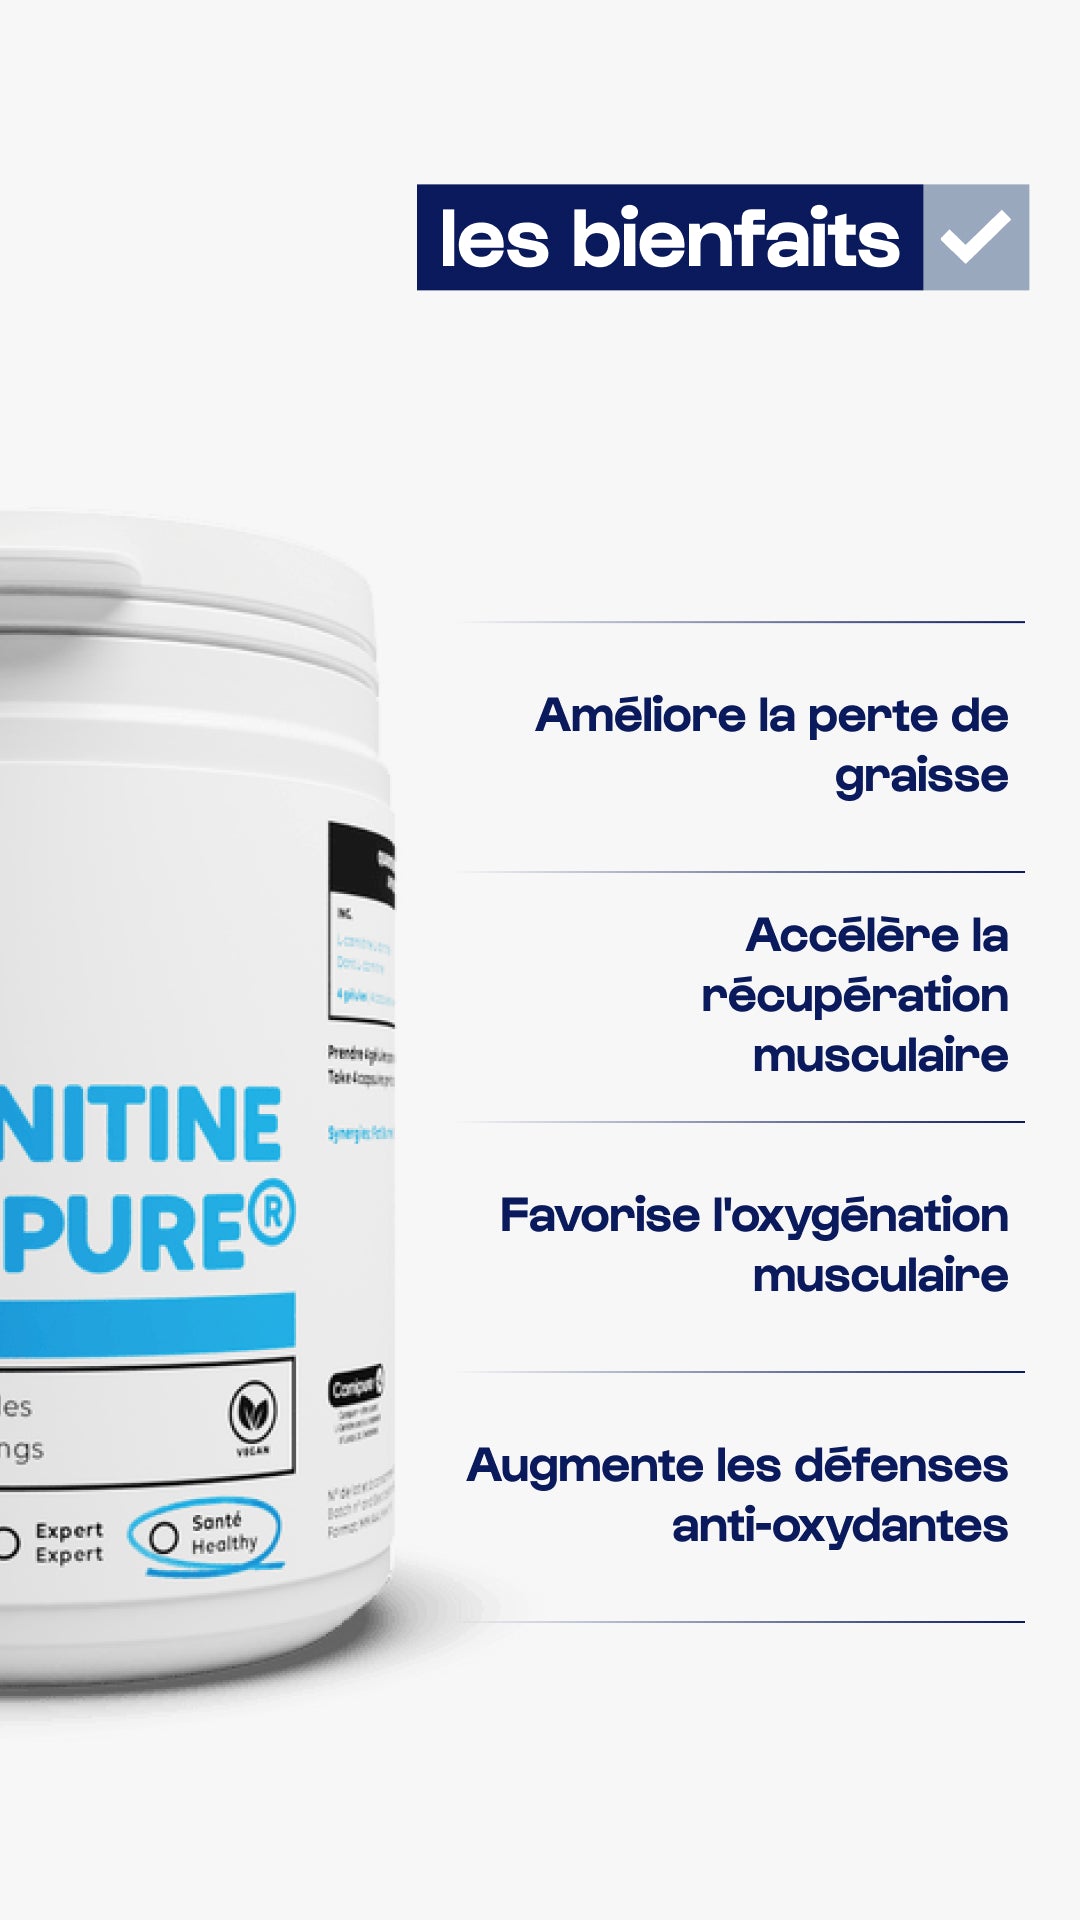 Carnitine Carnipure® powder